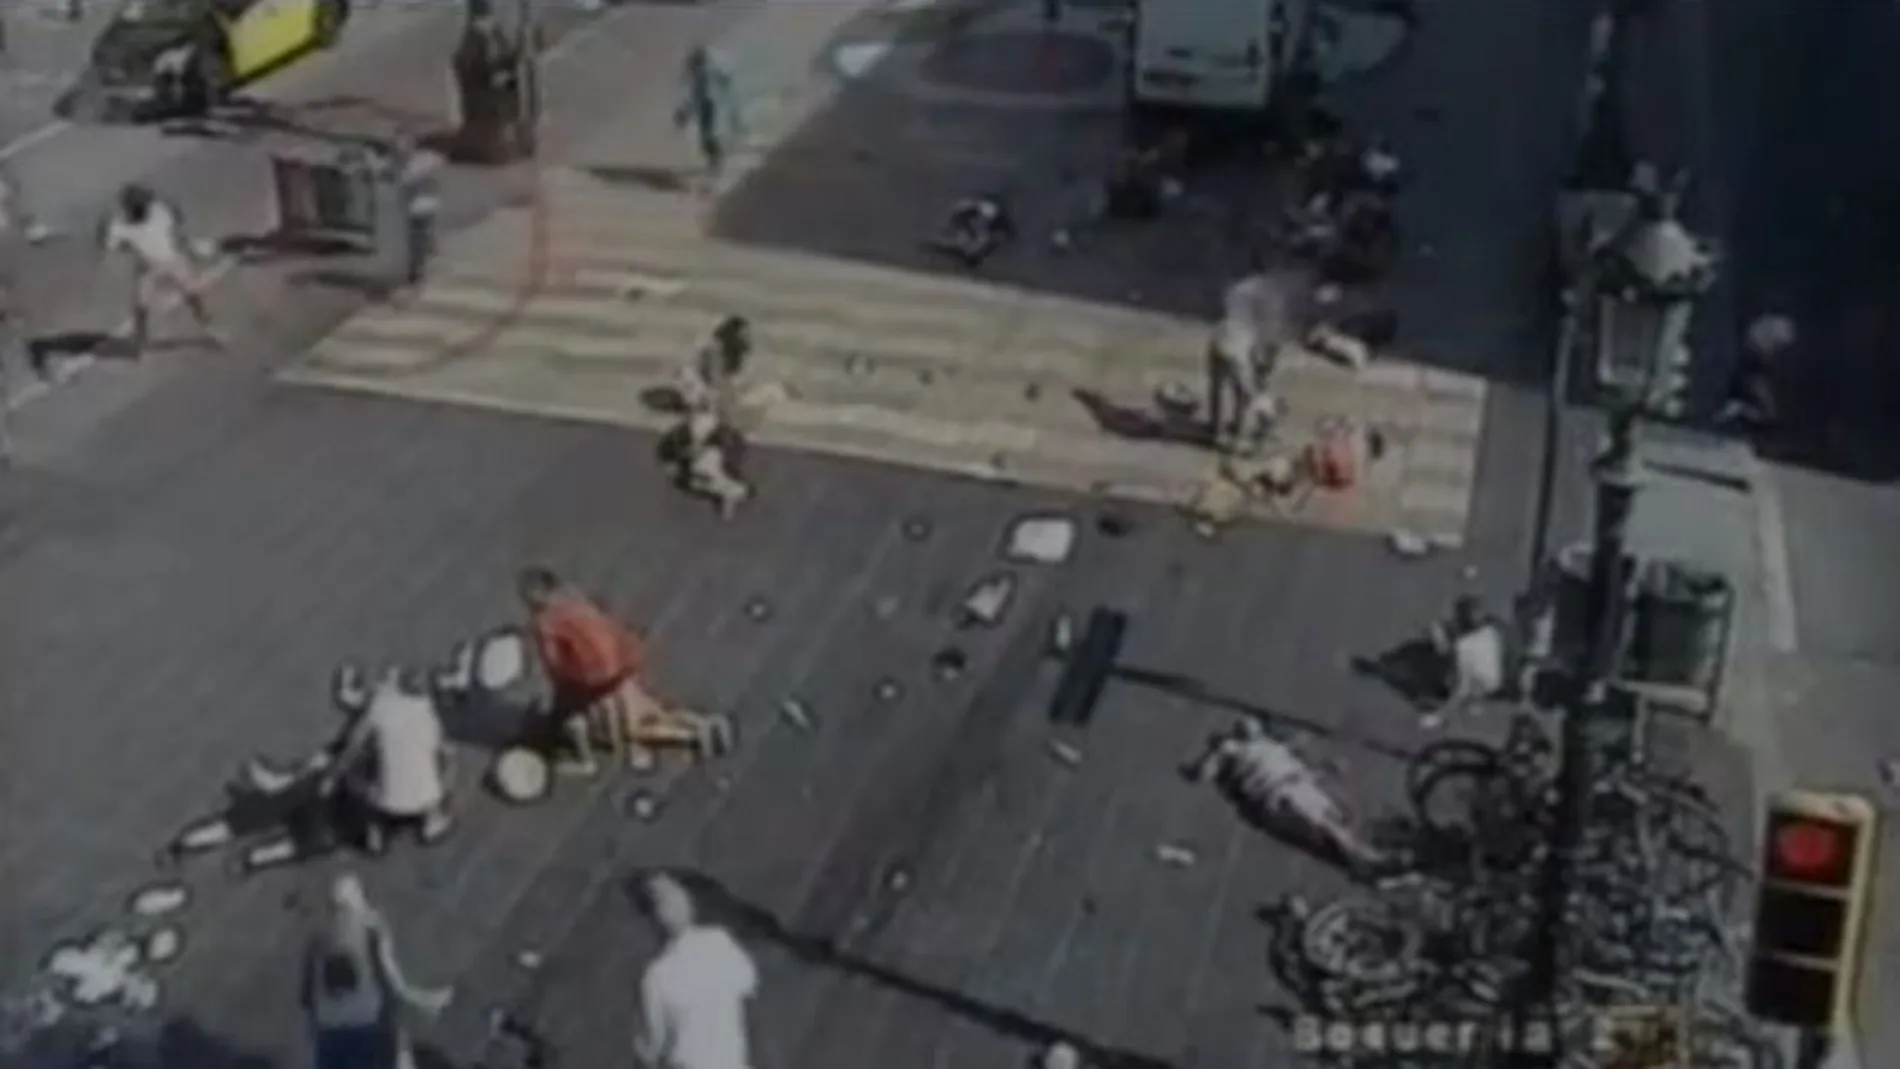 A la izquierda, con un círculo rojo alrededor, el terrorista huye tras cometer el atentado en las Ramblas de Barcelona